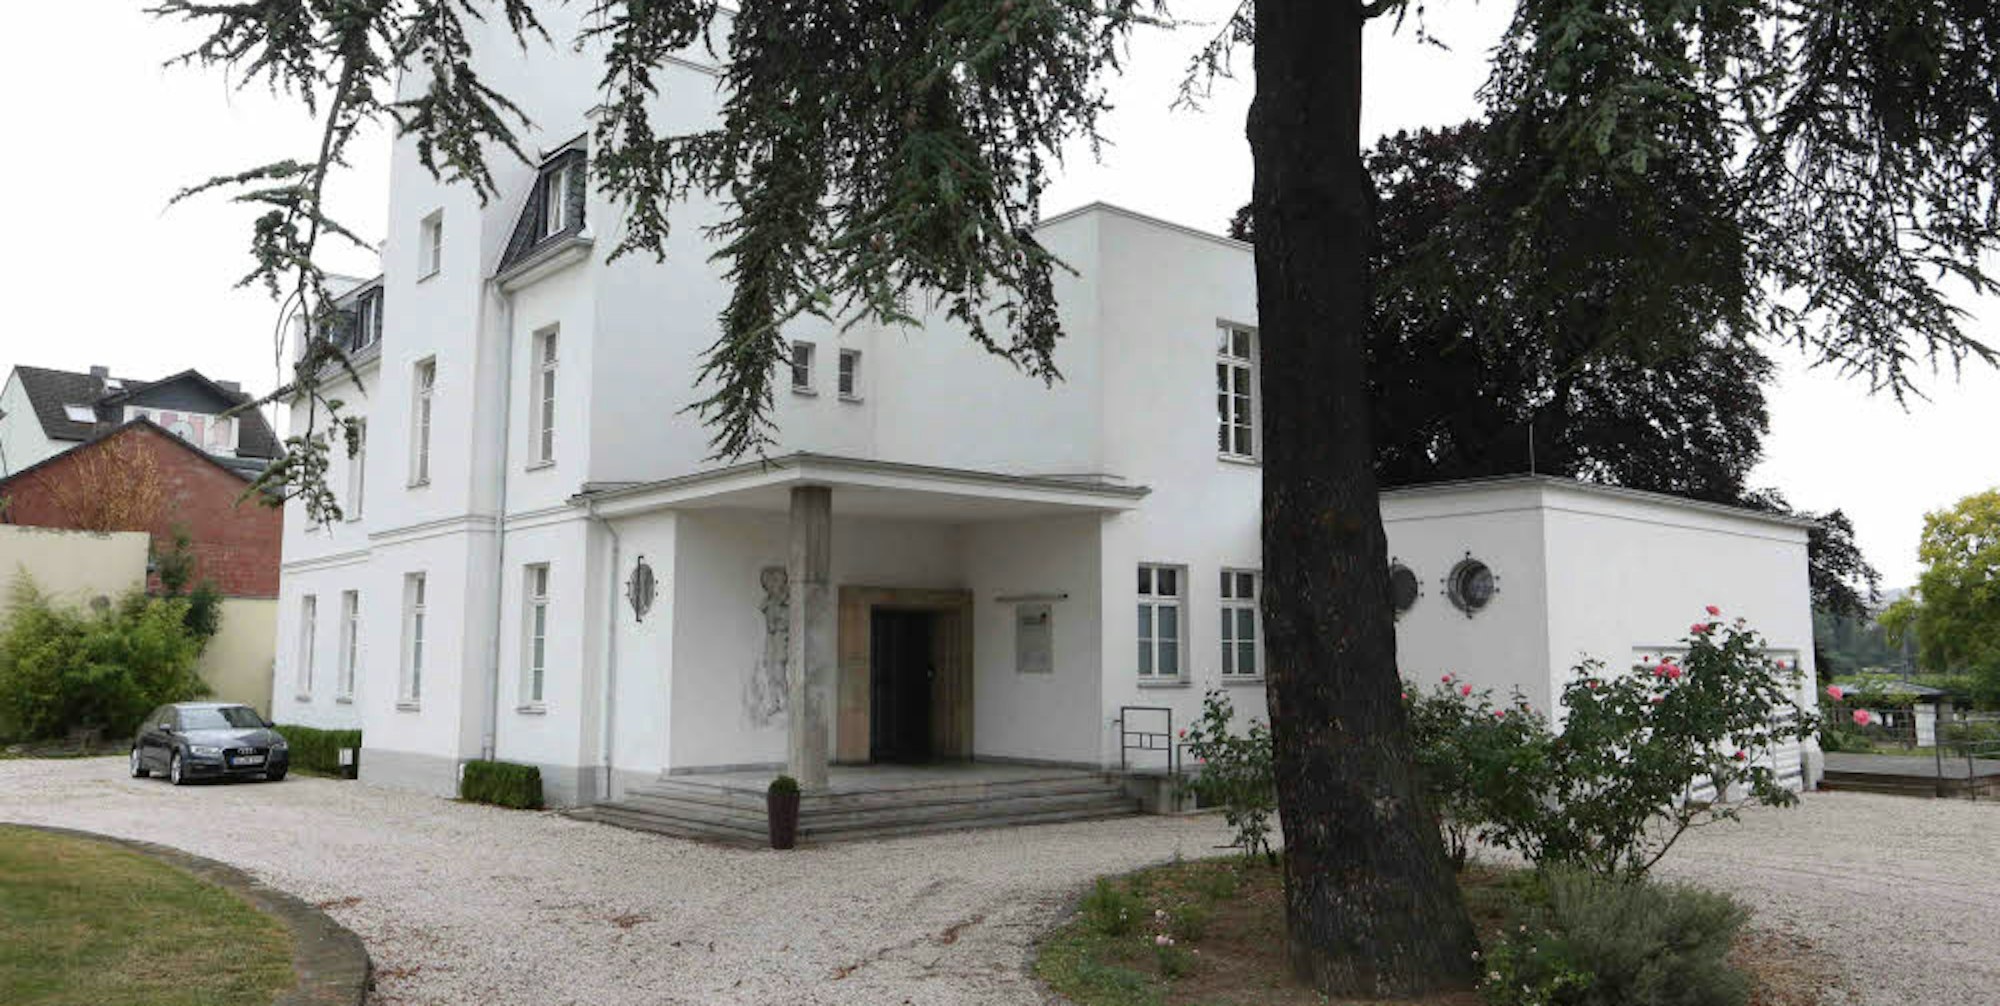 Am nördlichen Eingang der Altstadt steht die Villa Leonhart. Der Eigentümer, Gastronom Hermann Nolden, sucht jetzt nach einem Käufer.